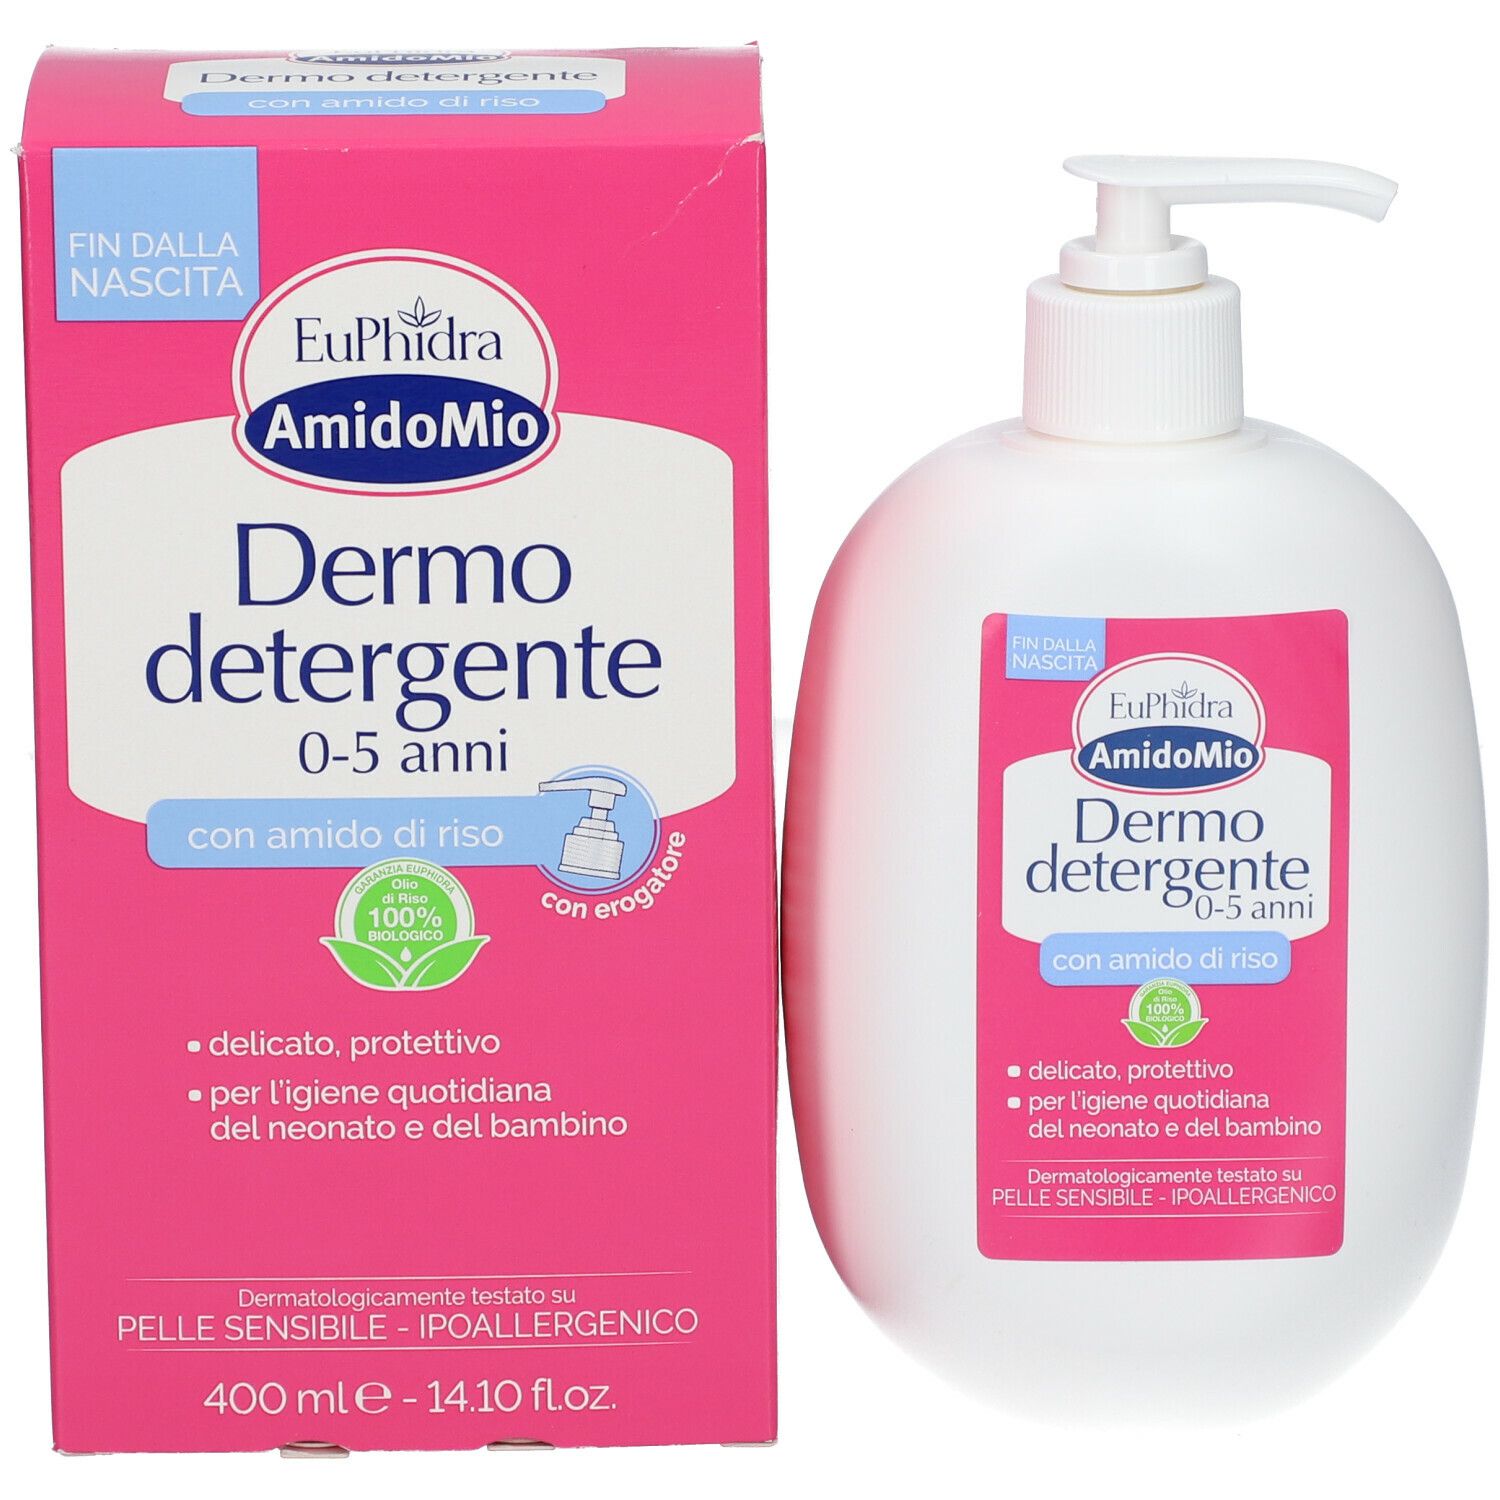 Euphidra AmidoMio Dermo Detergente 05 Anni 400ml a solo € 7,05 -   - Gli Specialisti del Benessere